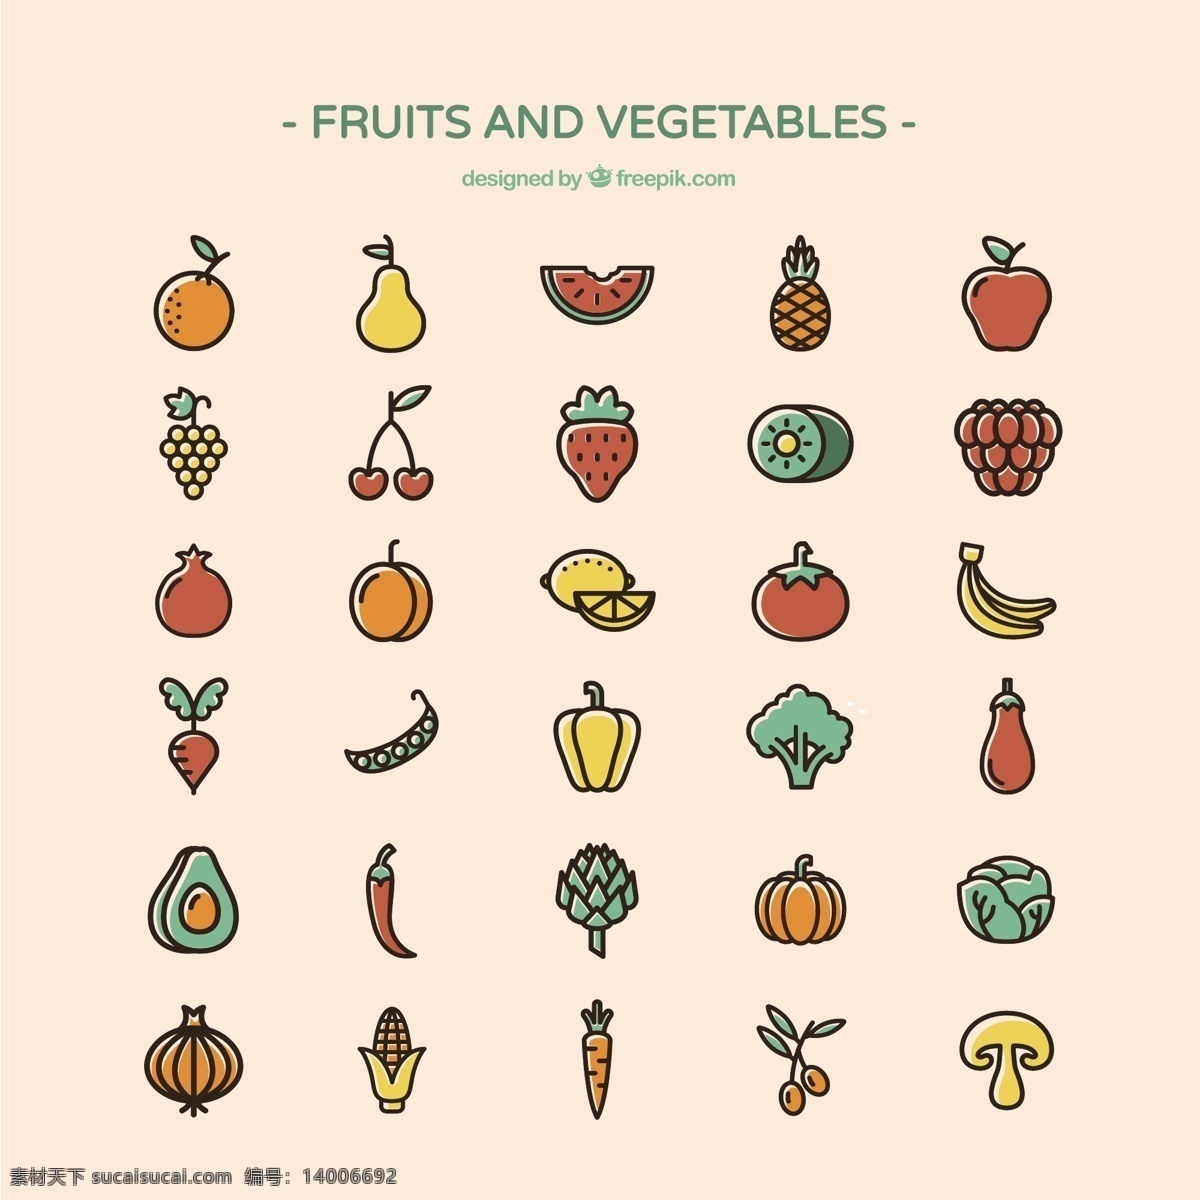 水果 蔬菜 图标 食品 健康 苹果 橙色 有机 草莓 柠檬 香蕉 葡萄 菠萝 番茄 樱桃